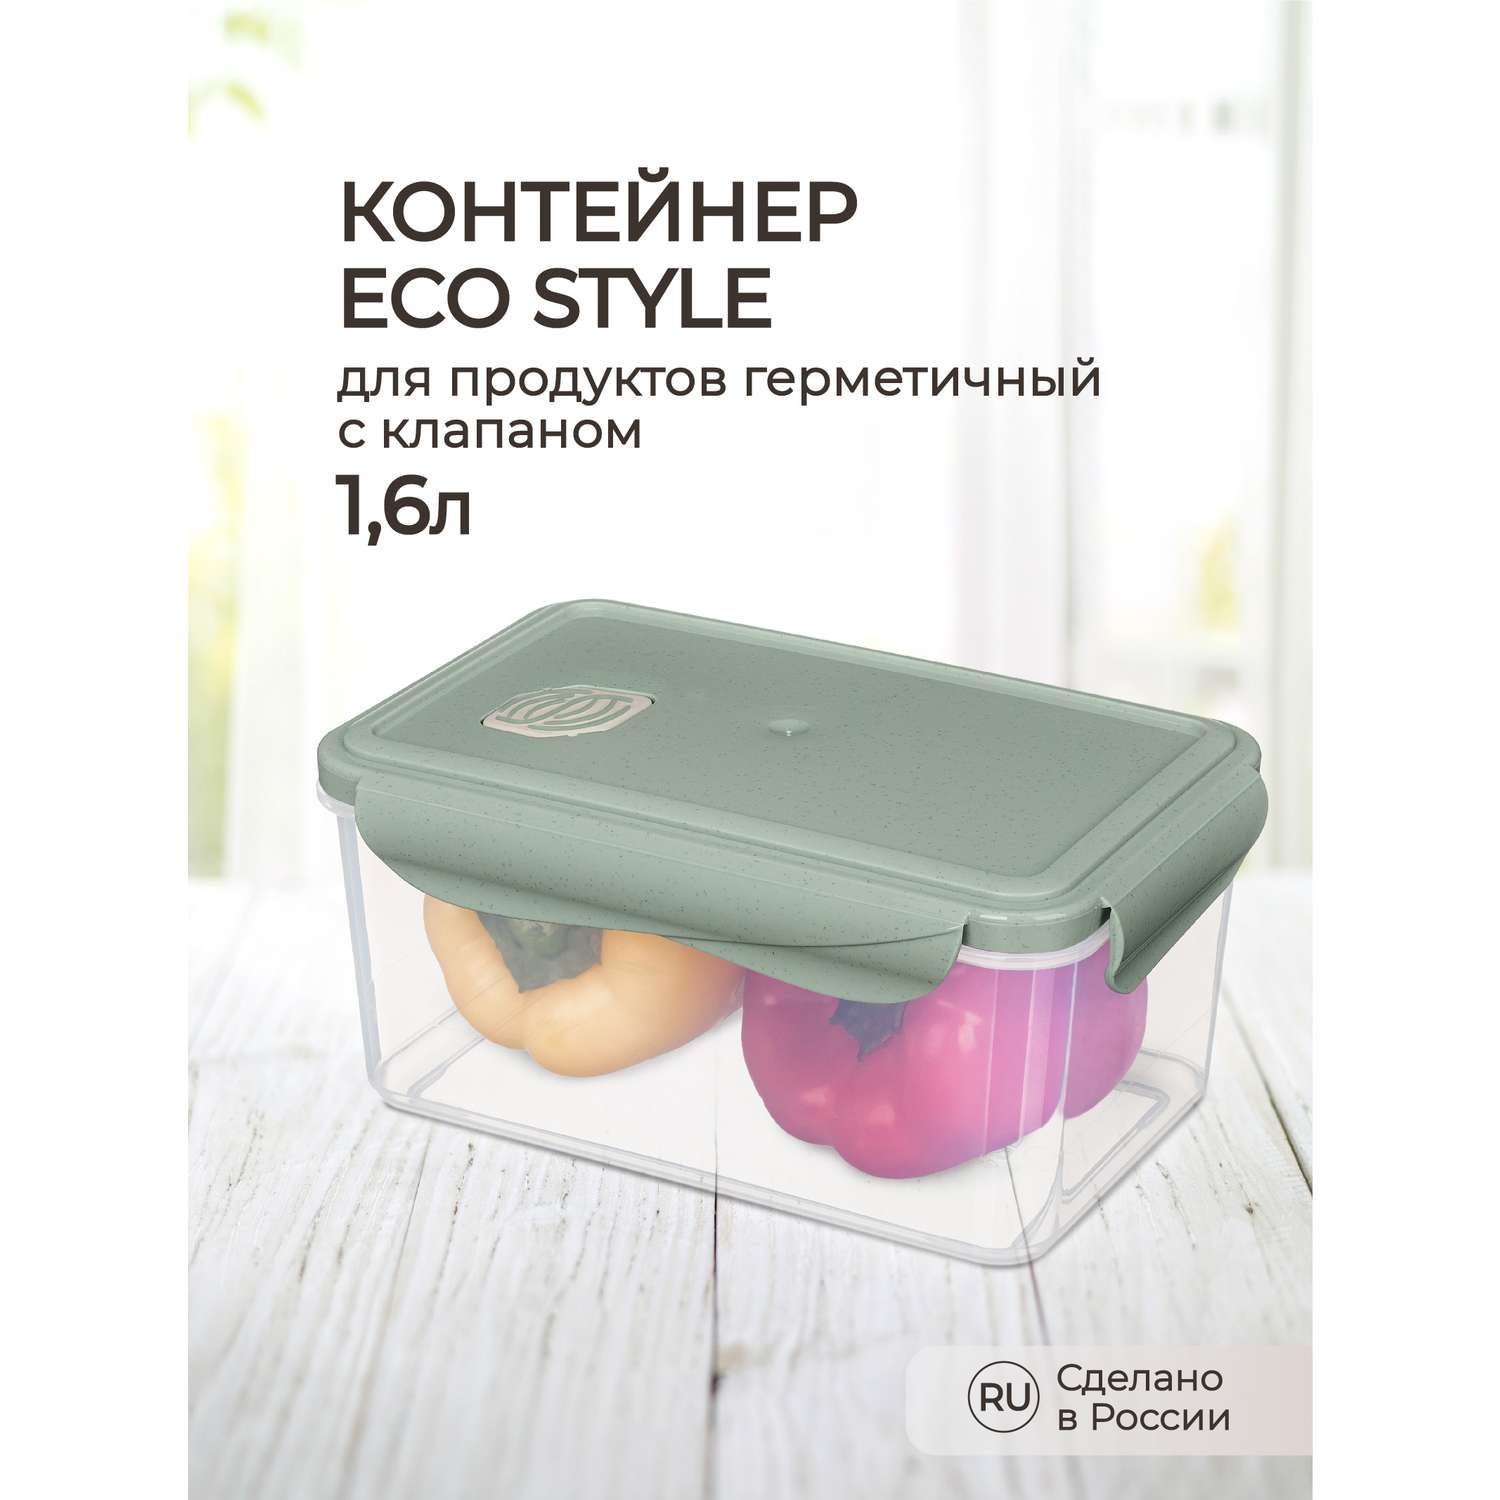 Контейнер Phibo для продуктов герметичный с клапаном Eco Style прямоугольный 1.6л зеленый флэк - фото 1